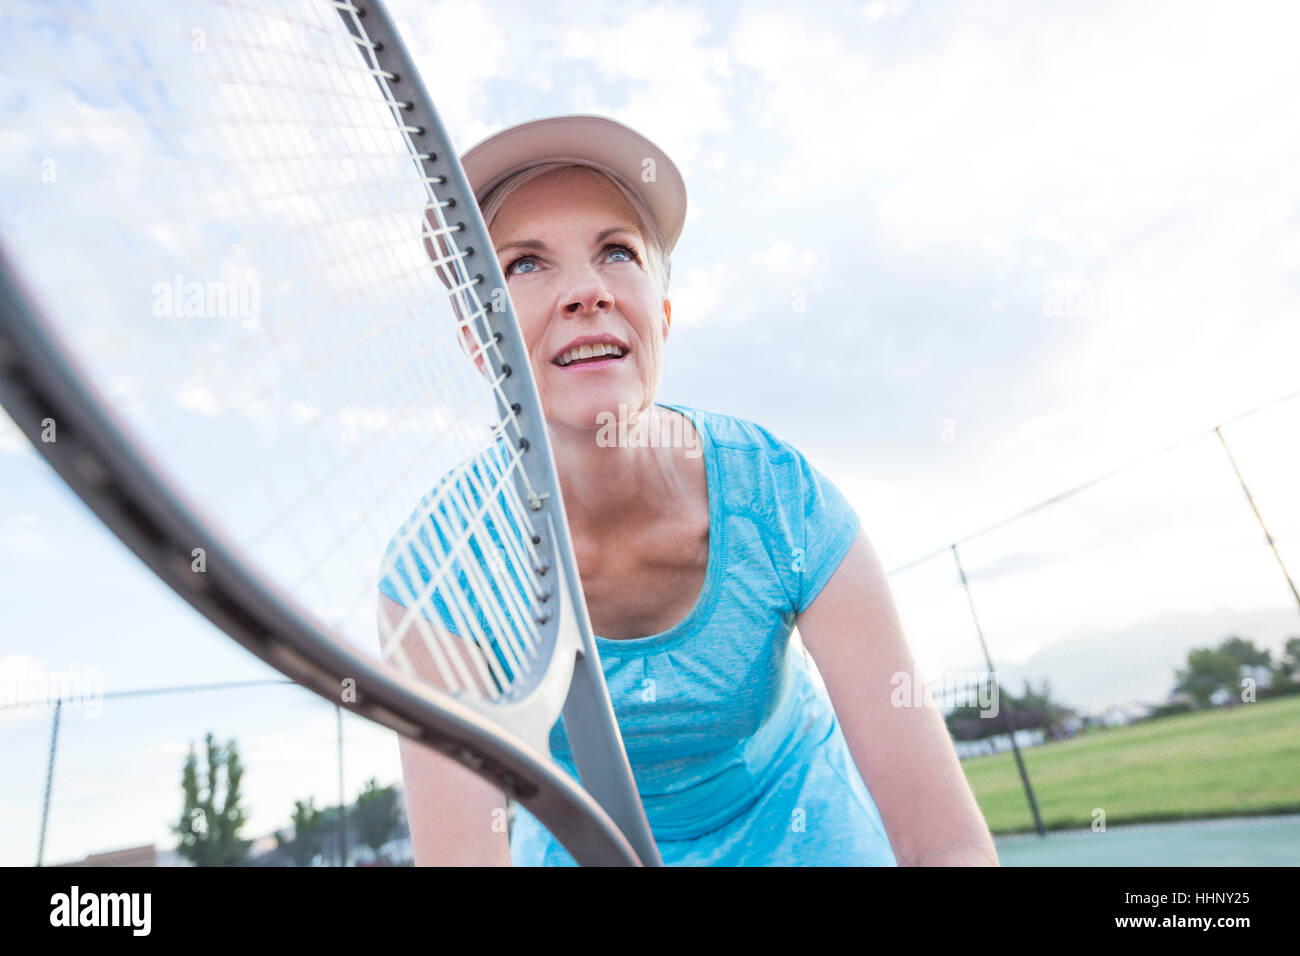 Mujer caucásica la celebración de raqueta de tenis Foto de stock